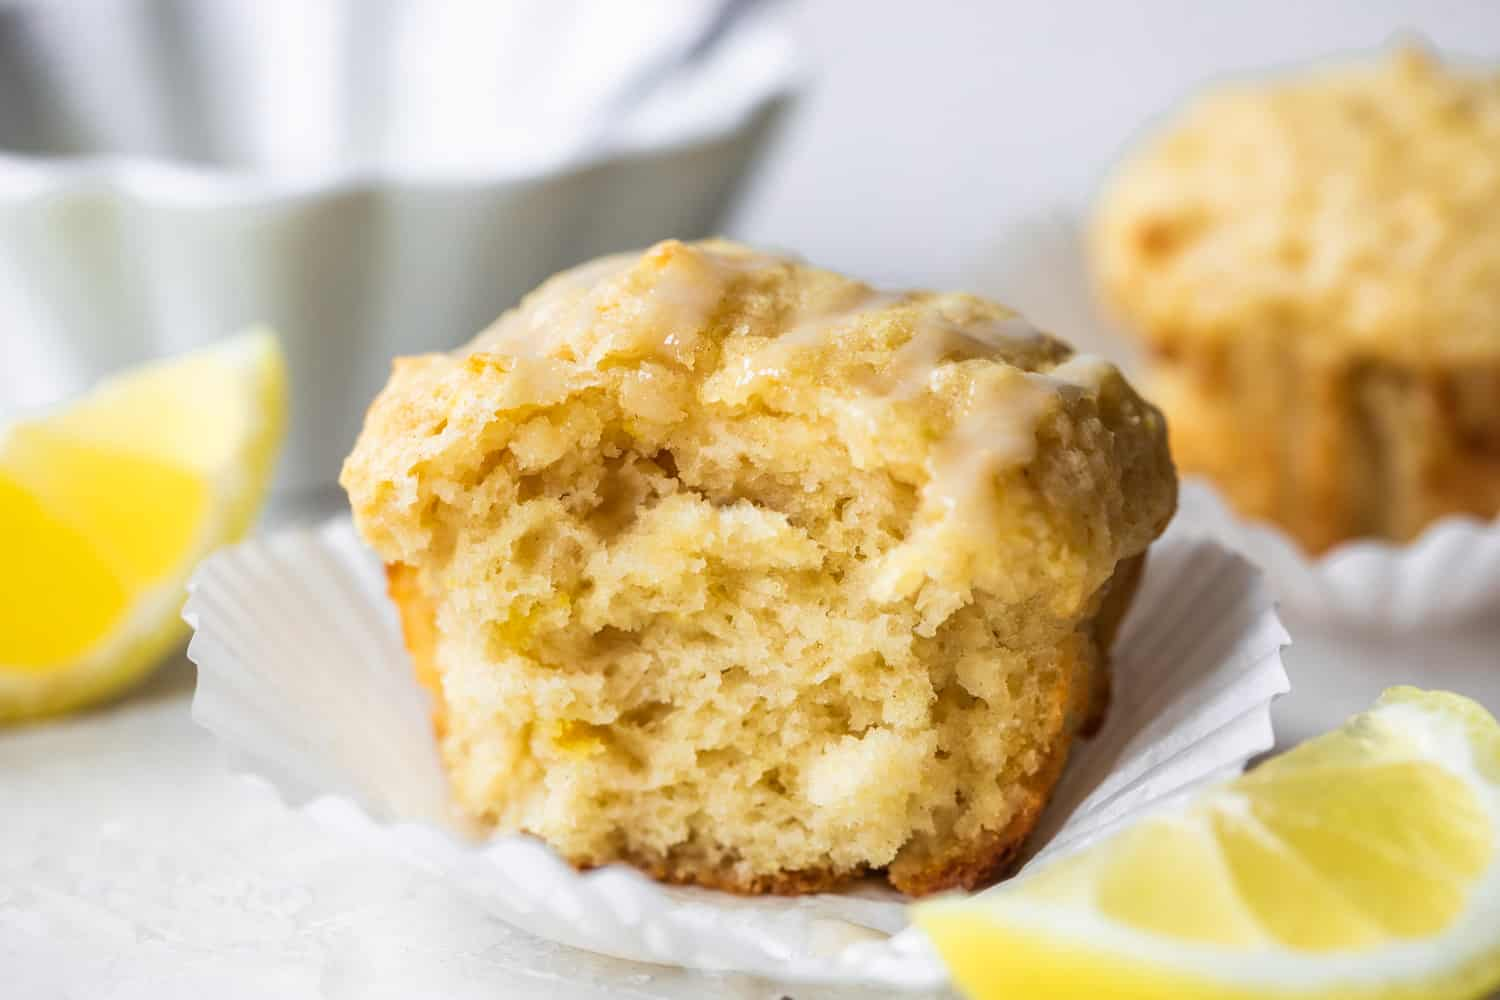 Imagem horizontal de muffin de limão assado com uma dentada faltando mostrando textura fofa. Cunhas de limão na lateral e uma tigela de gelo atrás do muffin.